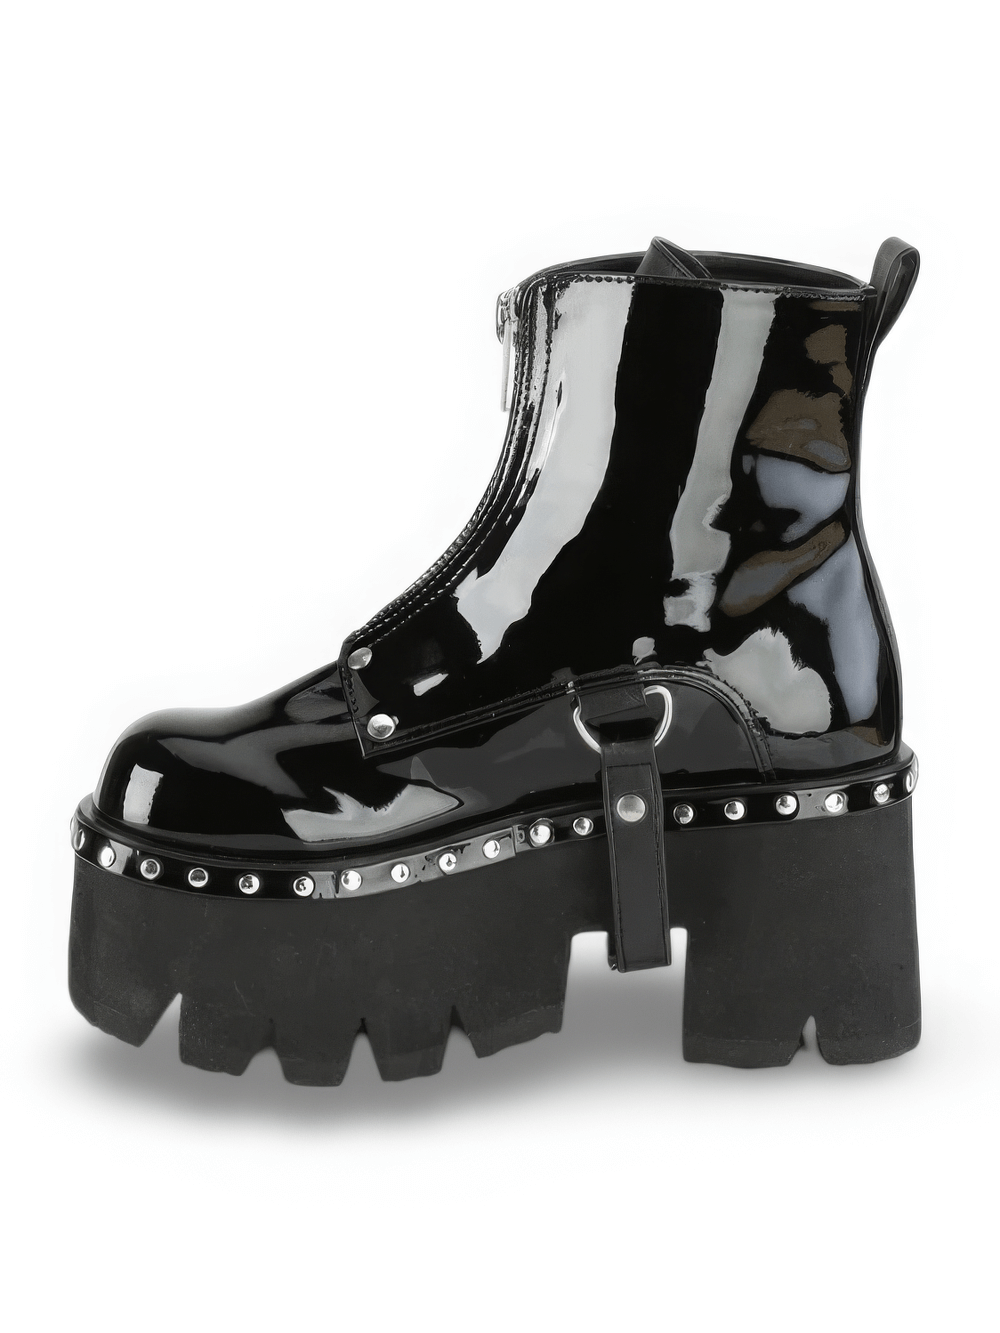 DEMONIA Black Chunky Heel Platform Boots with Metal Zip